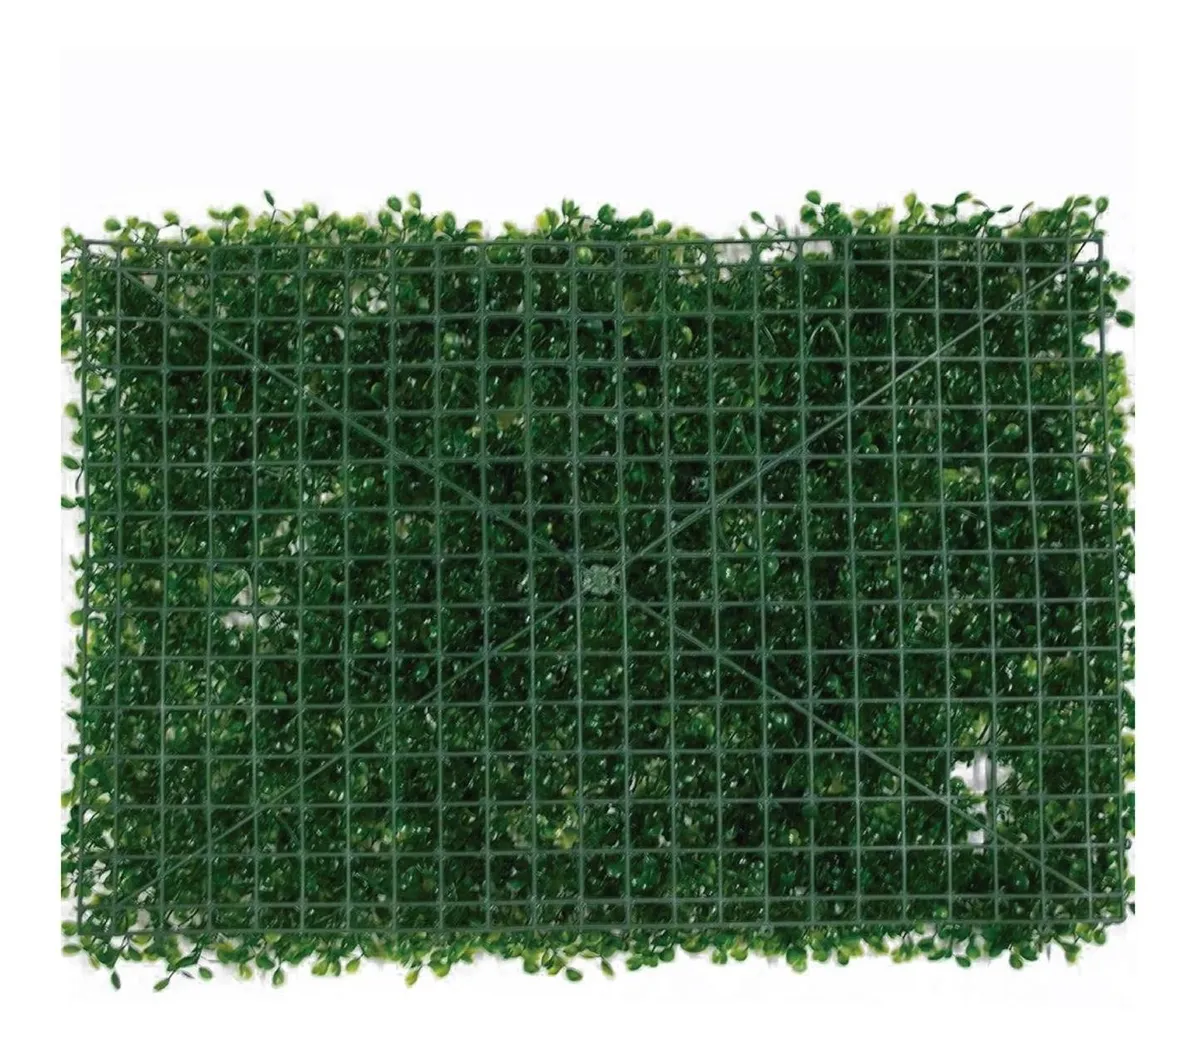 Muro Verde Follaje Artificial Sintetico 40x60cm Jardin